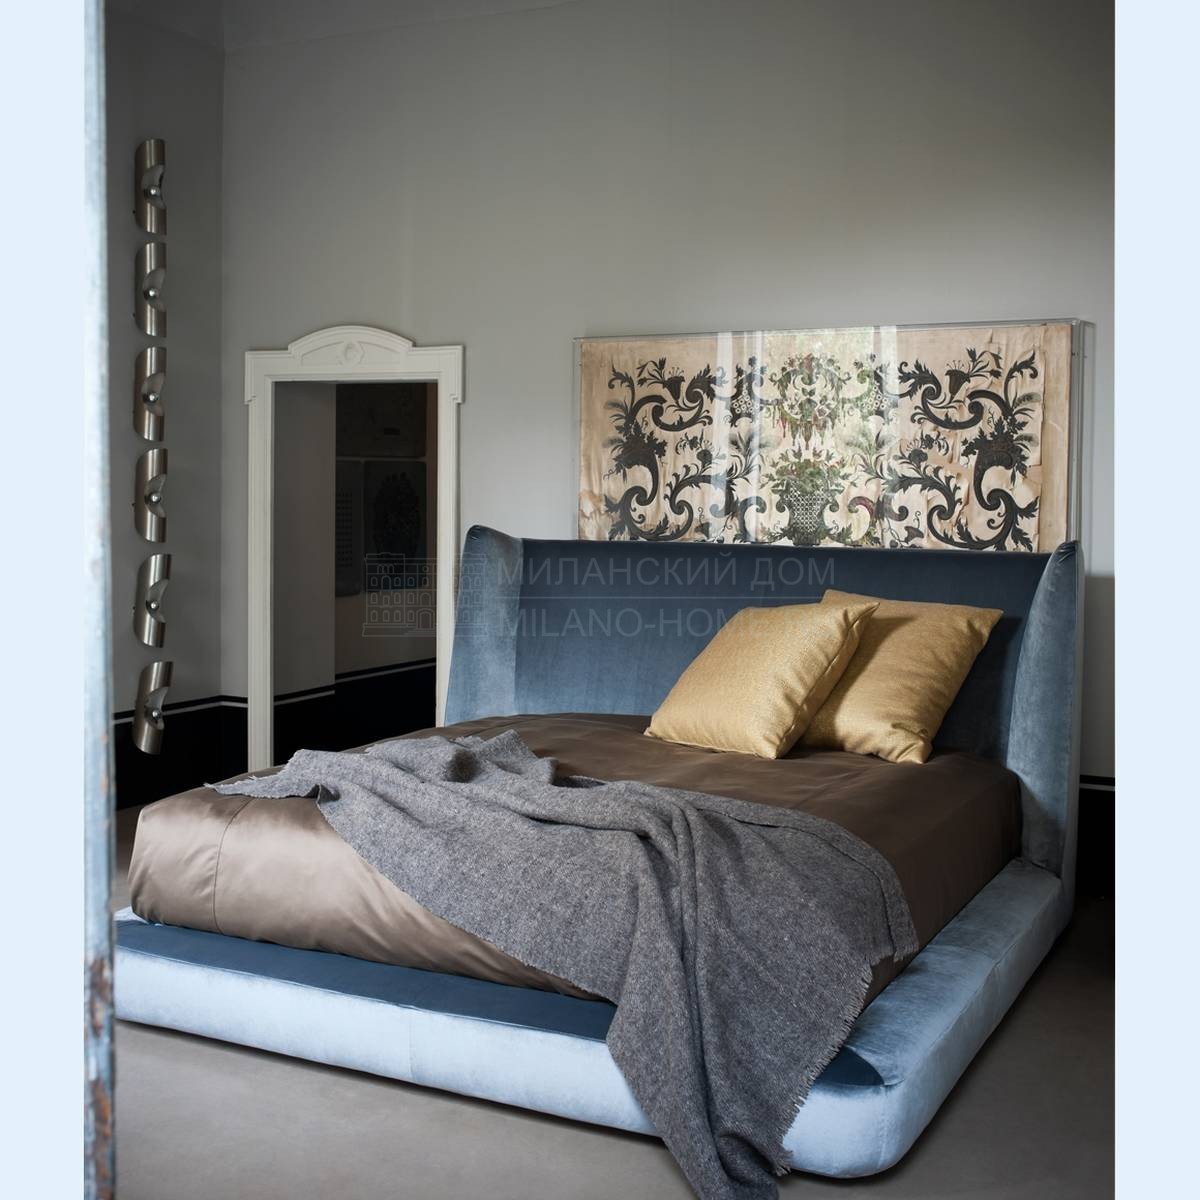 Кровать с мягким изголовьем Midnight/ bed из Италии фабрики FLEXFORM